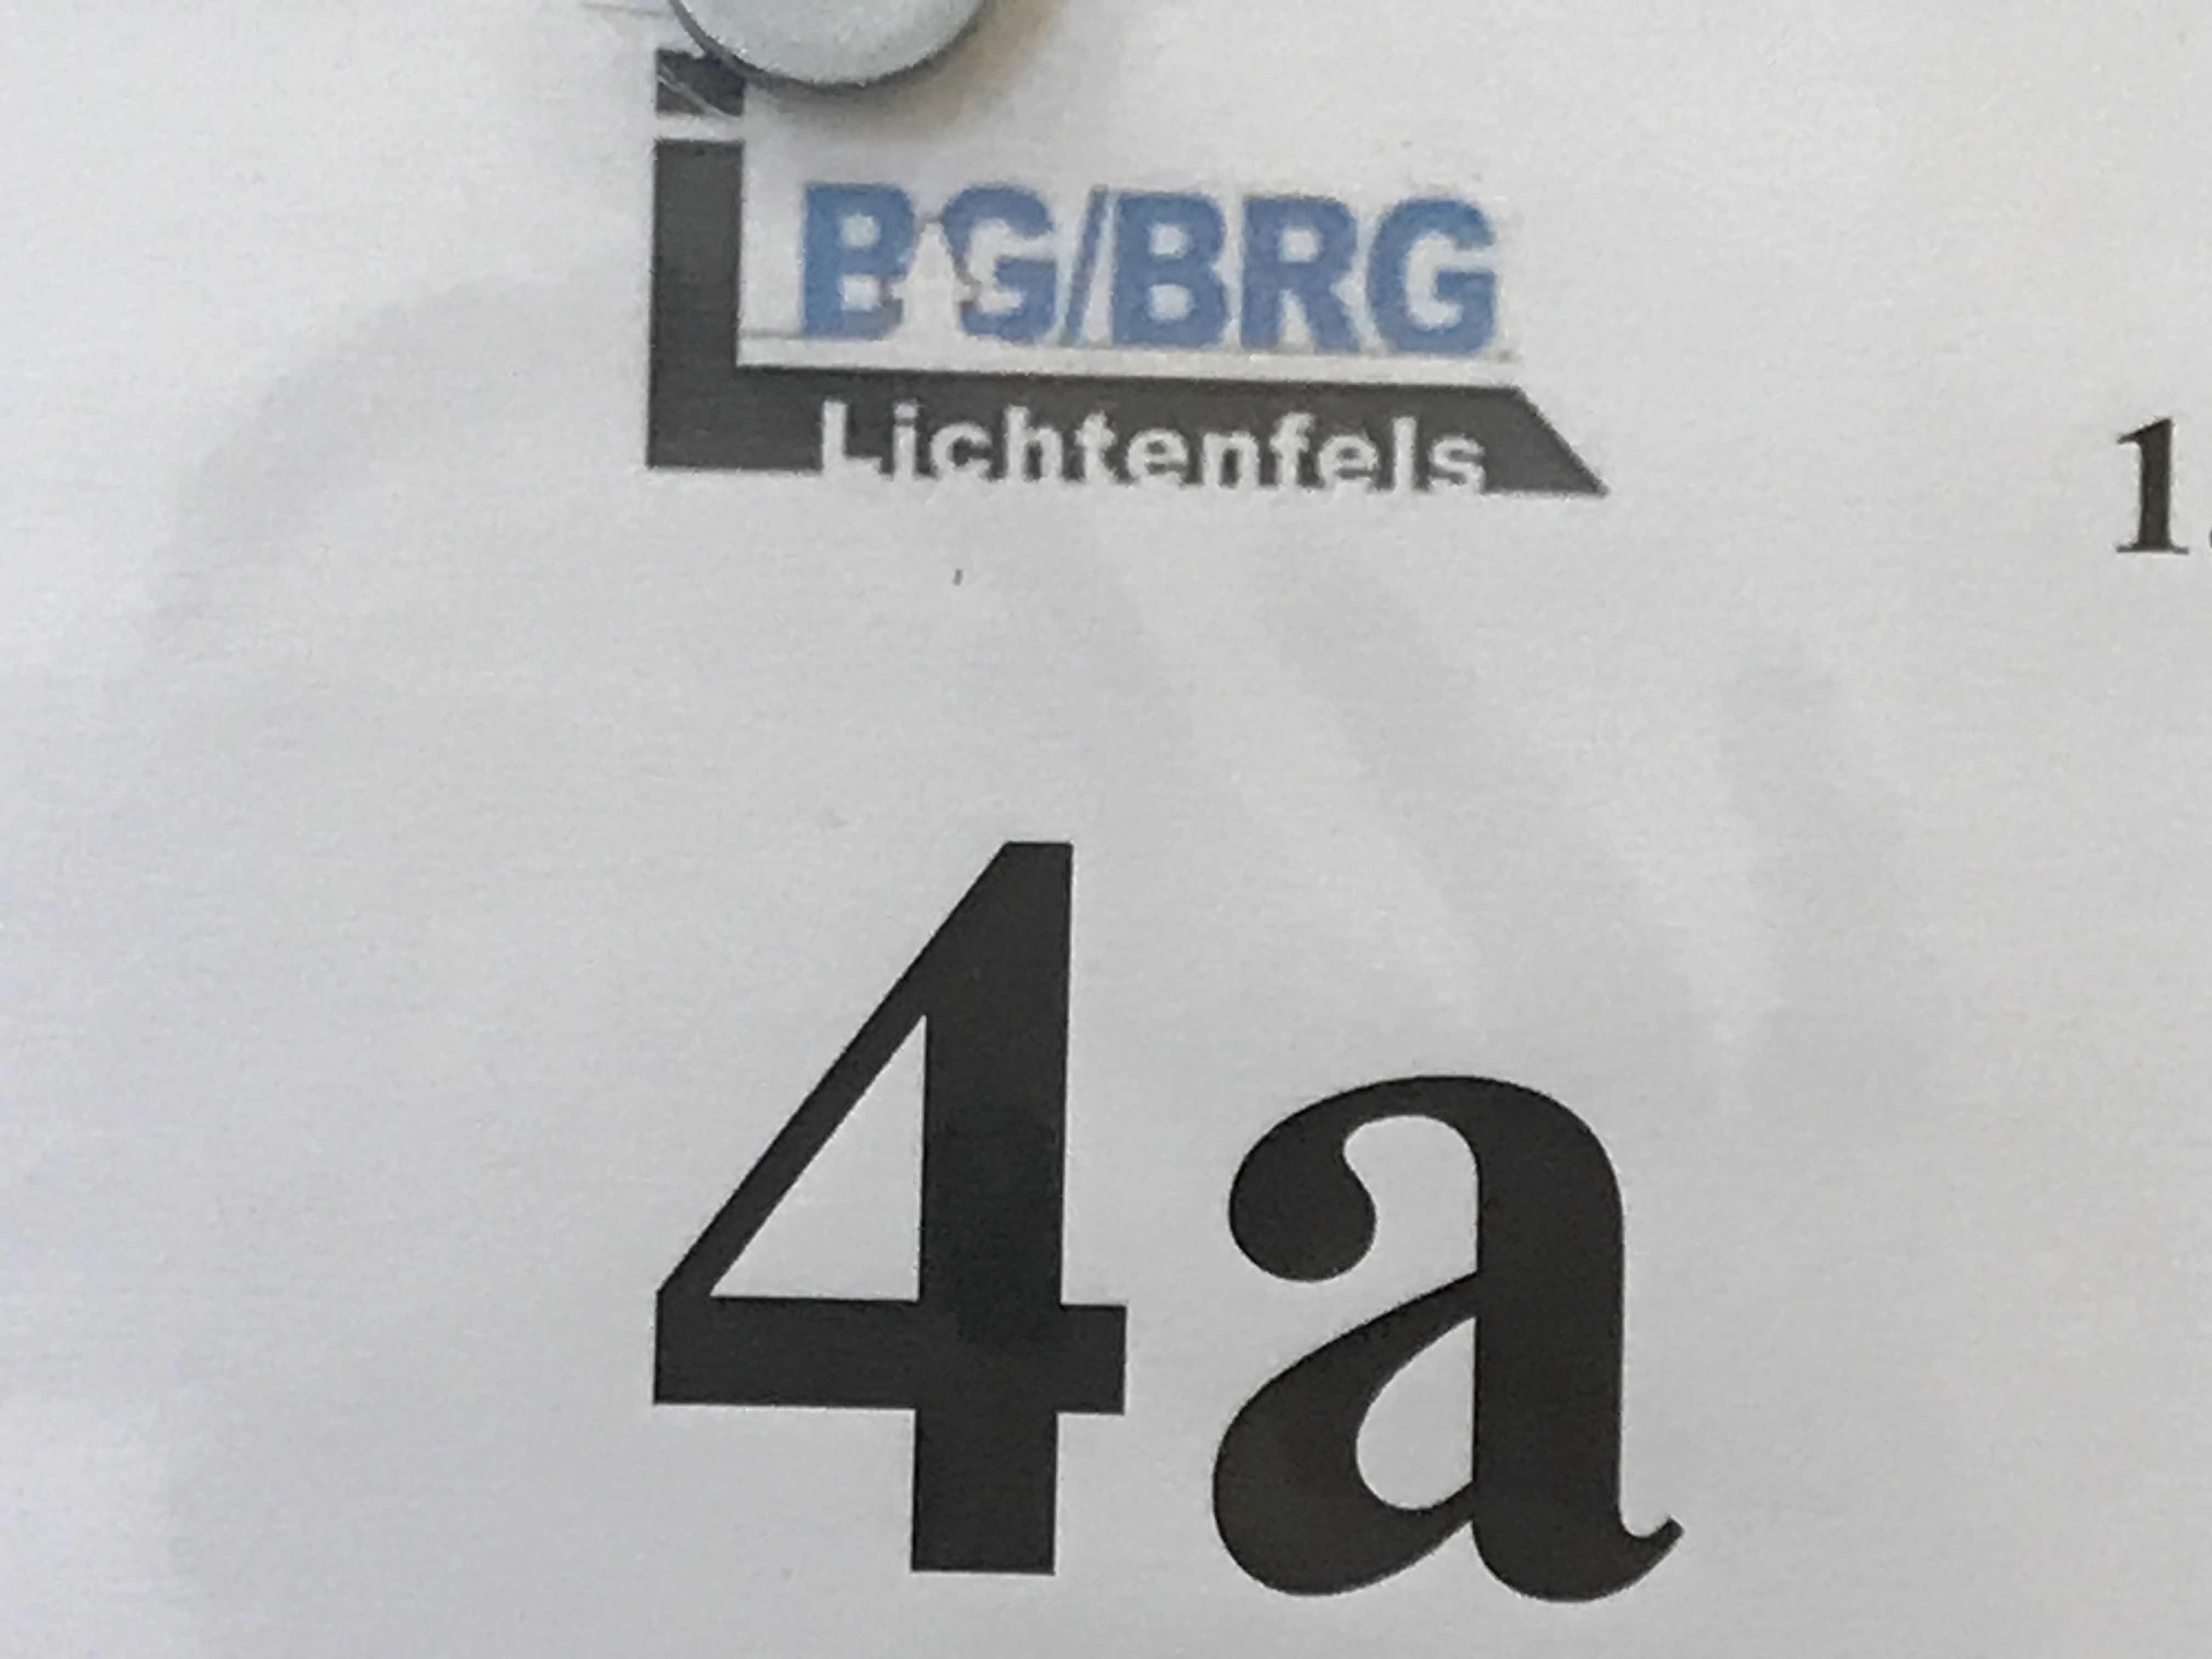 4a BG/BRG Lichtenfelsgasse